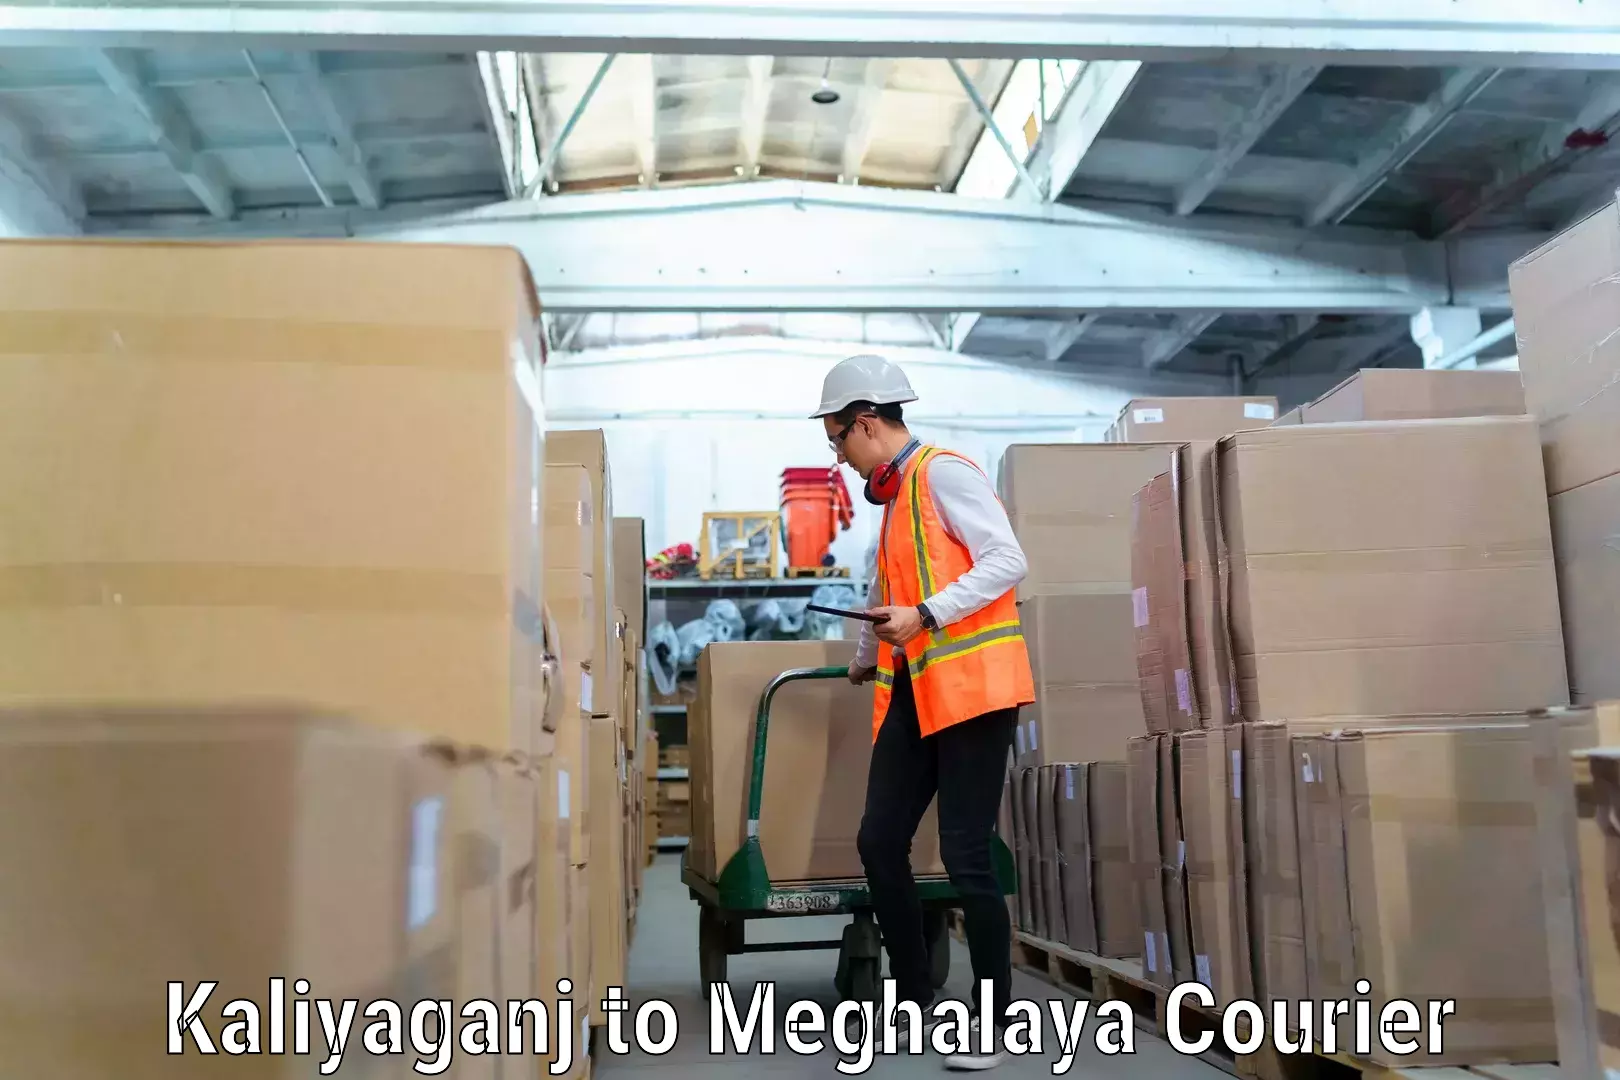 Furniture moving experts Kaliyaganj to Meghalaya